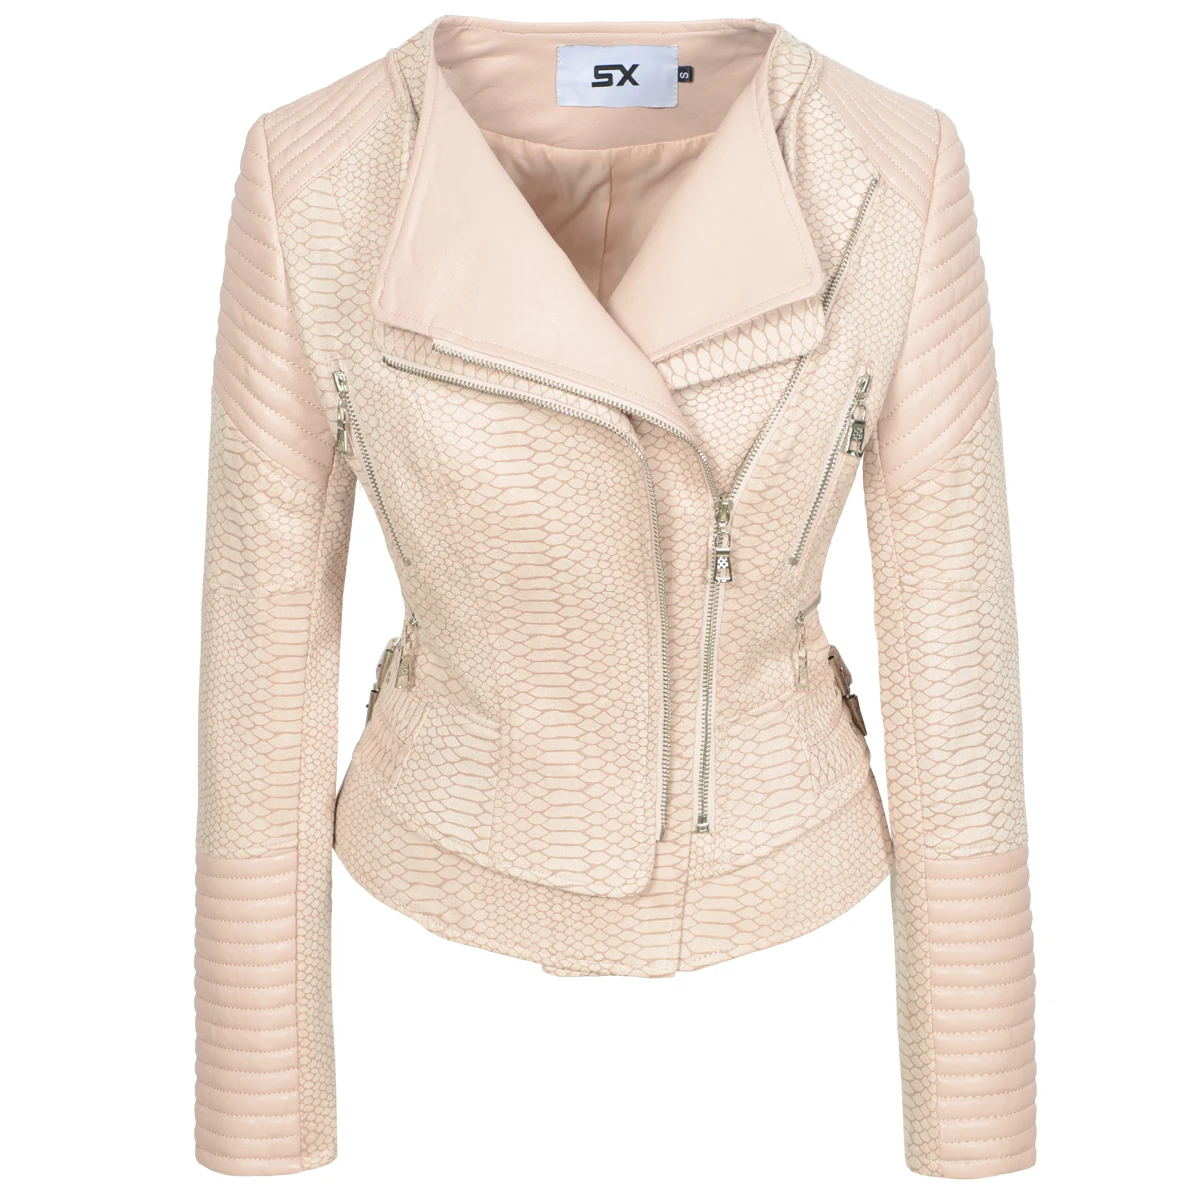 sx-spring-autumn-women-faux-leather-suede-jacket-ladies-pink-snake-pattern-zipper-biker-pu-slim-coat-female-casual-outwear